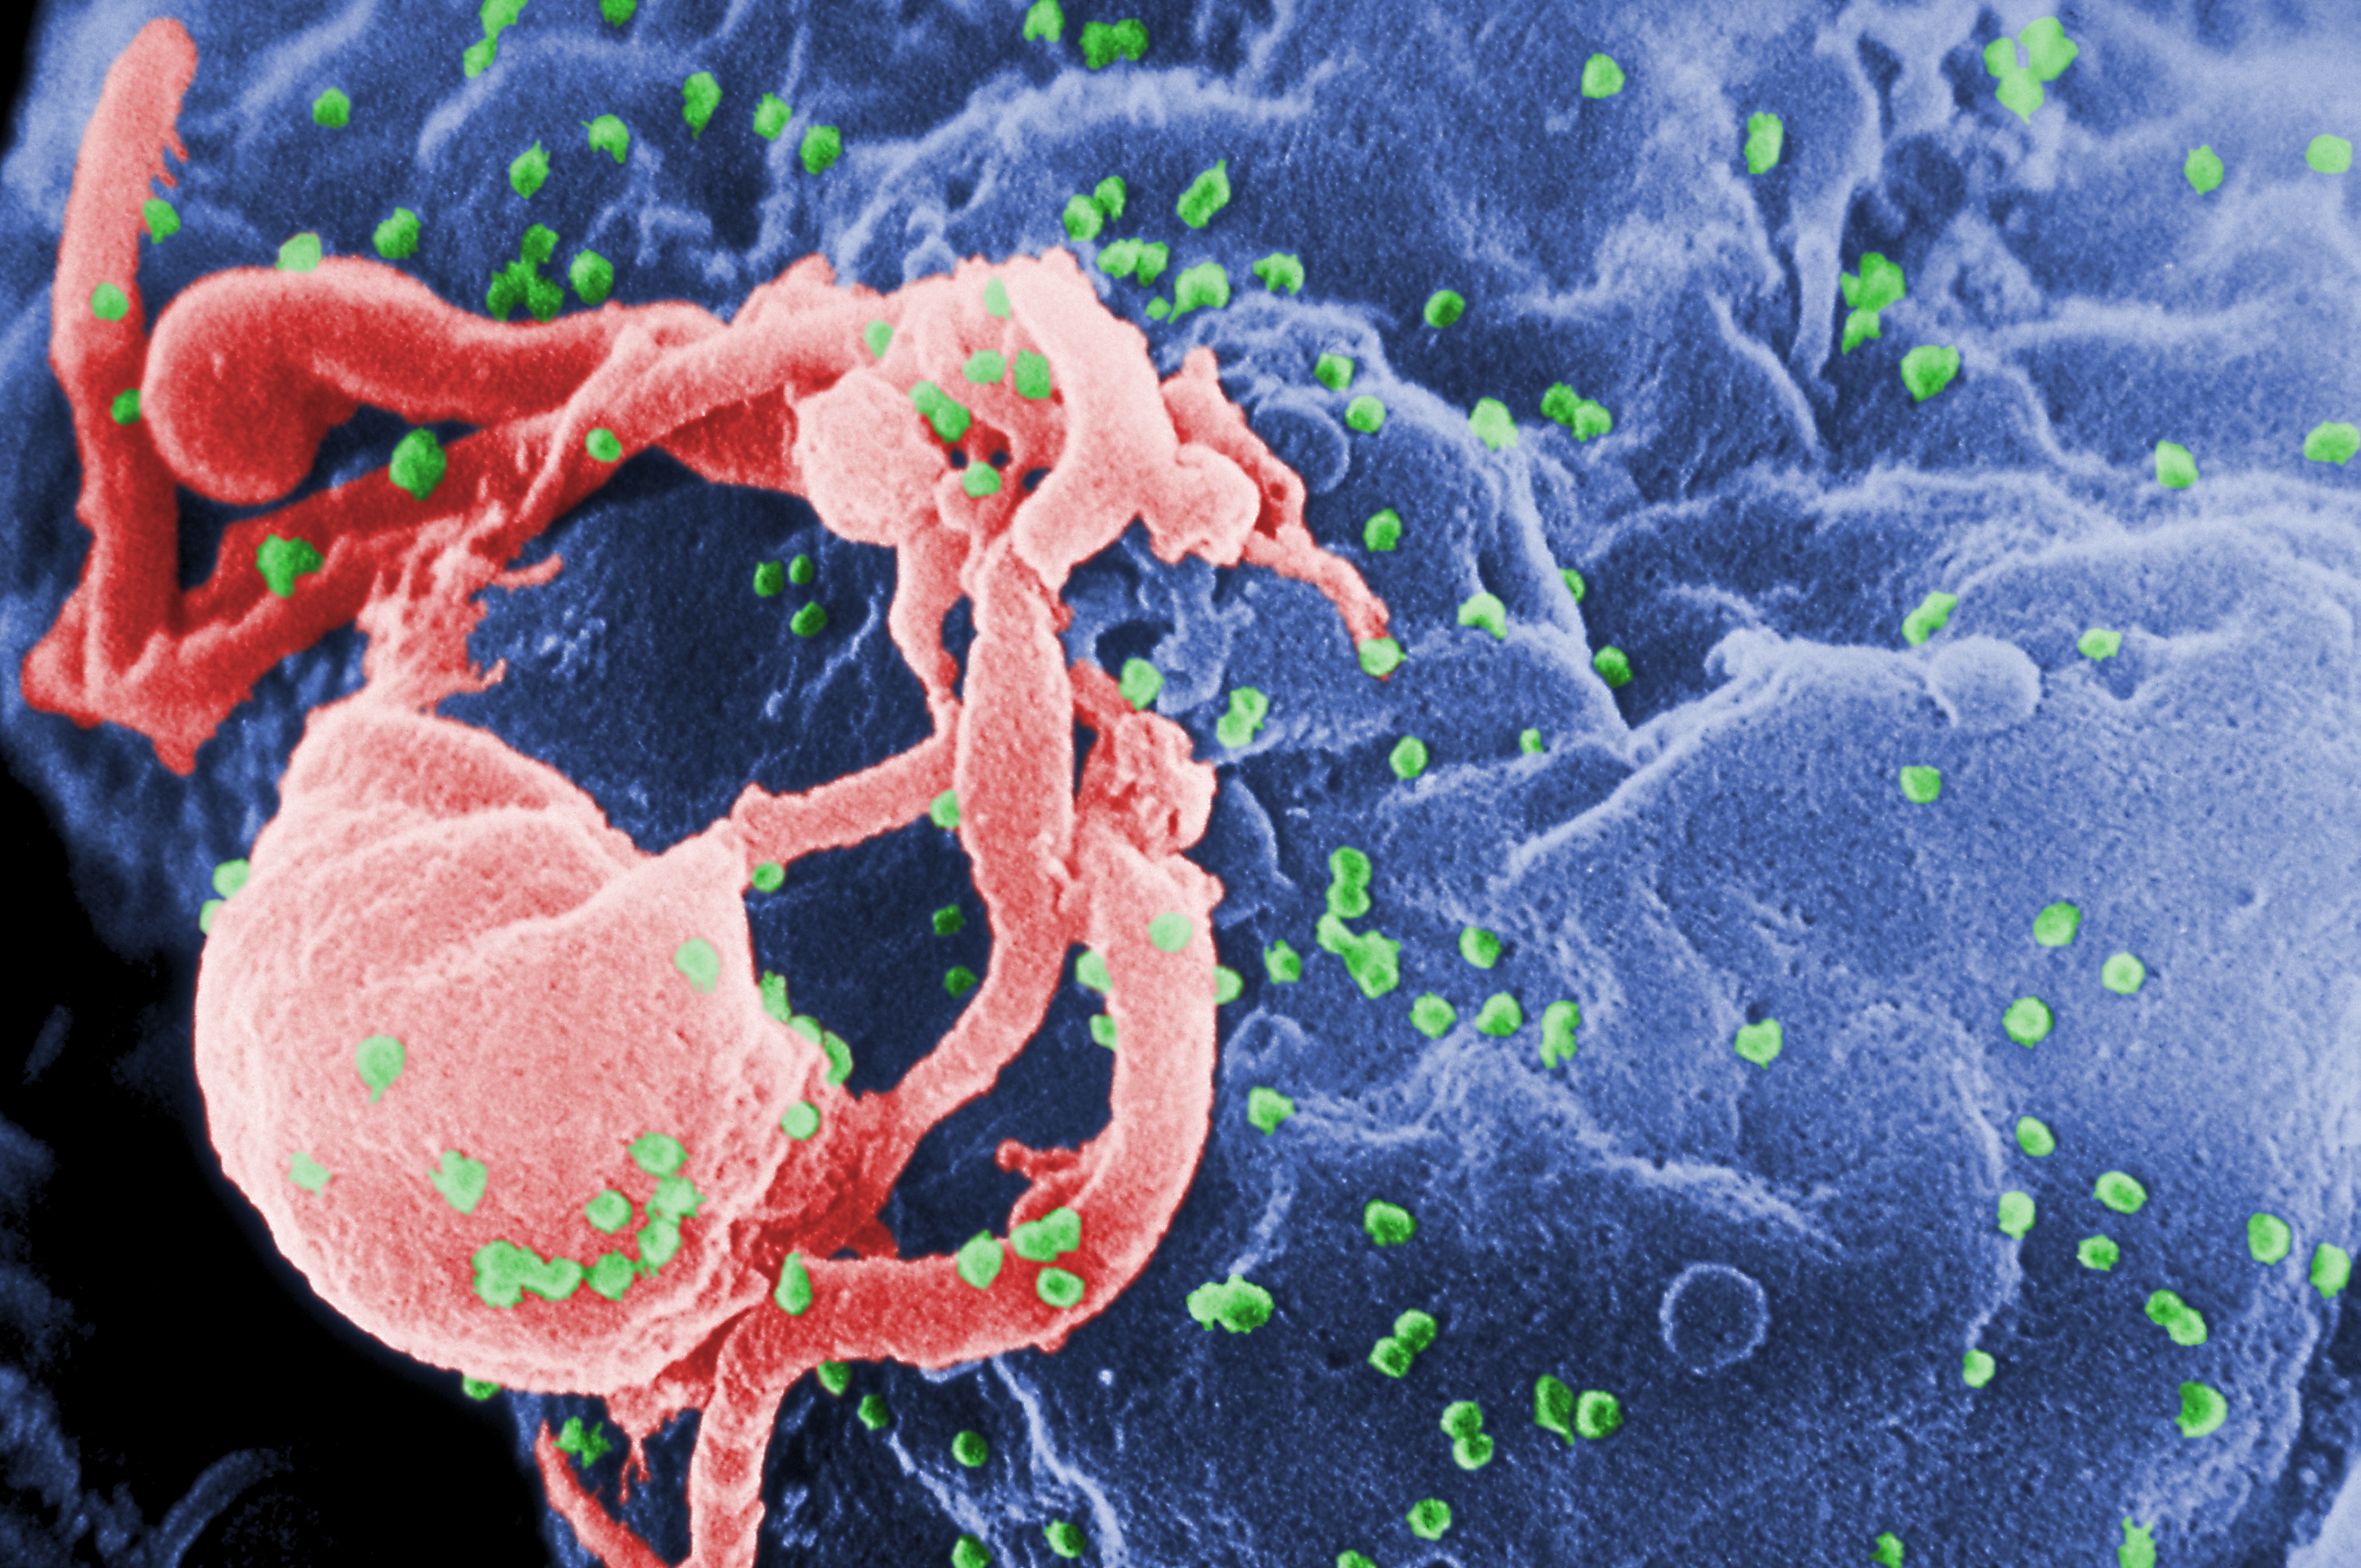 El SIDA es una enfermedad de transmisión sexual que se propaga a través de determinados líquidos corporales (fluidos sexuales o sangre) y ataca el sistema inmunitario del cuerpo, dejándonos expuesto a las enfermedades. En esta microfotograra se aprecia al Virus de la Inmunodeficiencia Humana 1 (VIH-1) en liberación (en verde) en un cultivo de linfocitos.